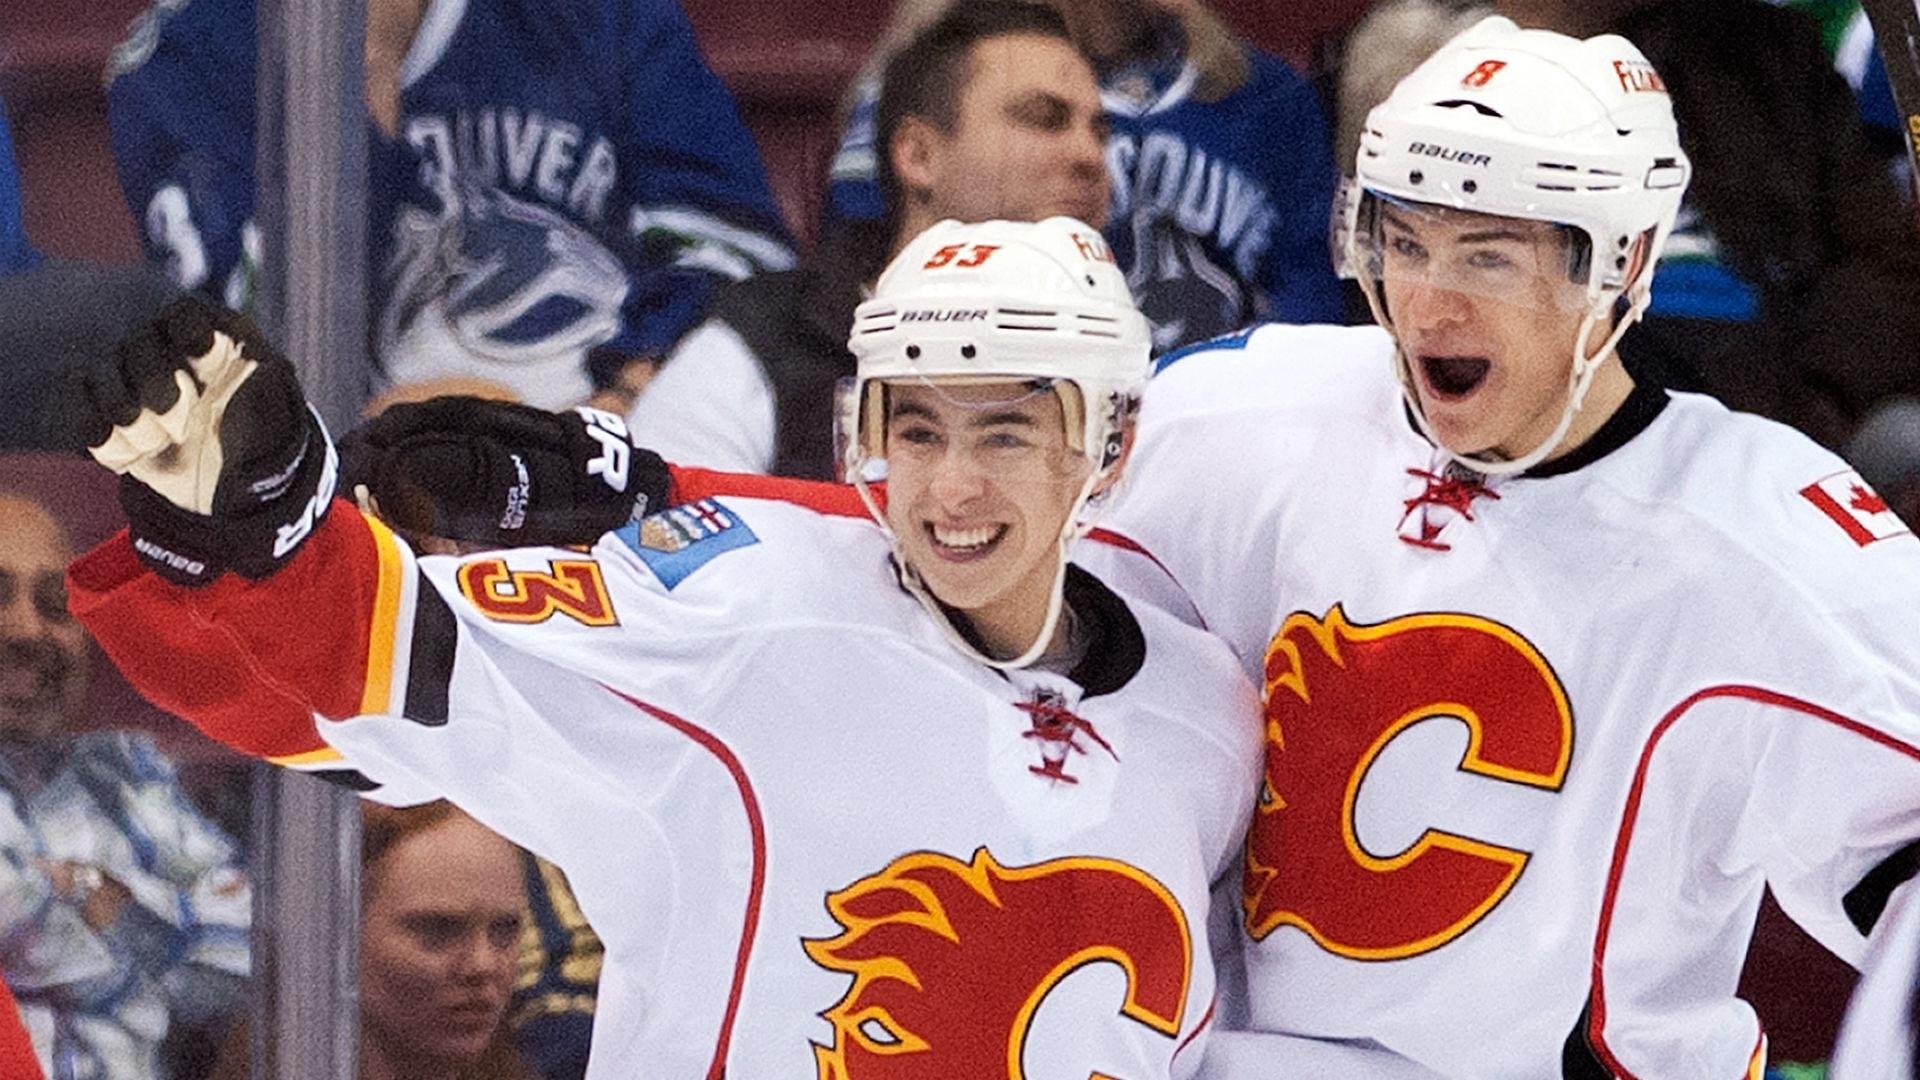 Calgary Flames' Johnny Gaudreau files trademark for 'Johnny Hockey